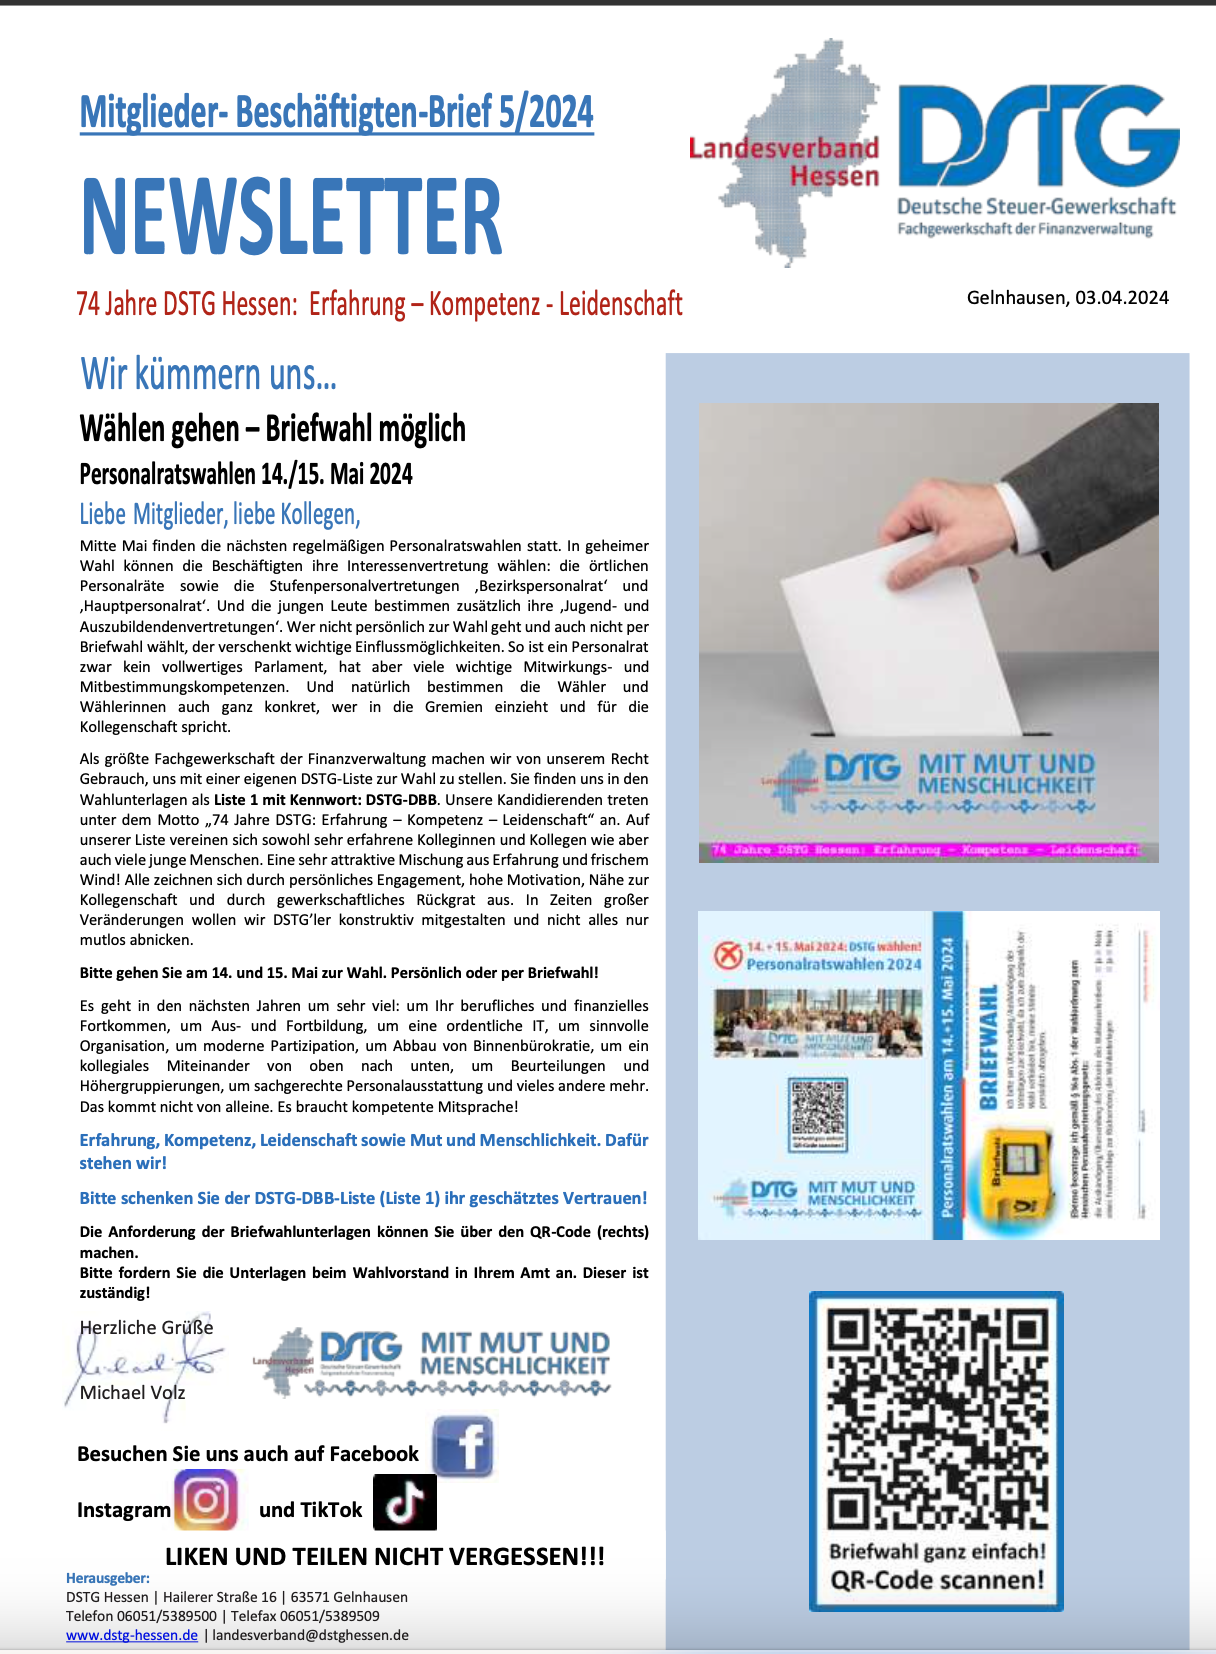 DSTG-NEWSLETTER 5/2024 – Wählen gehen – Briefwahl möglich